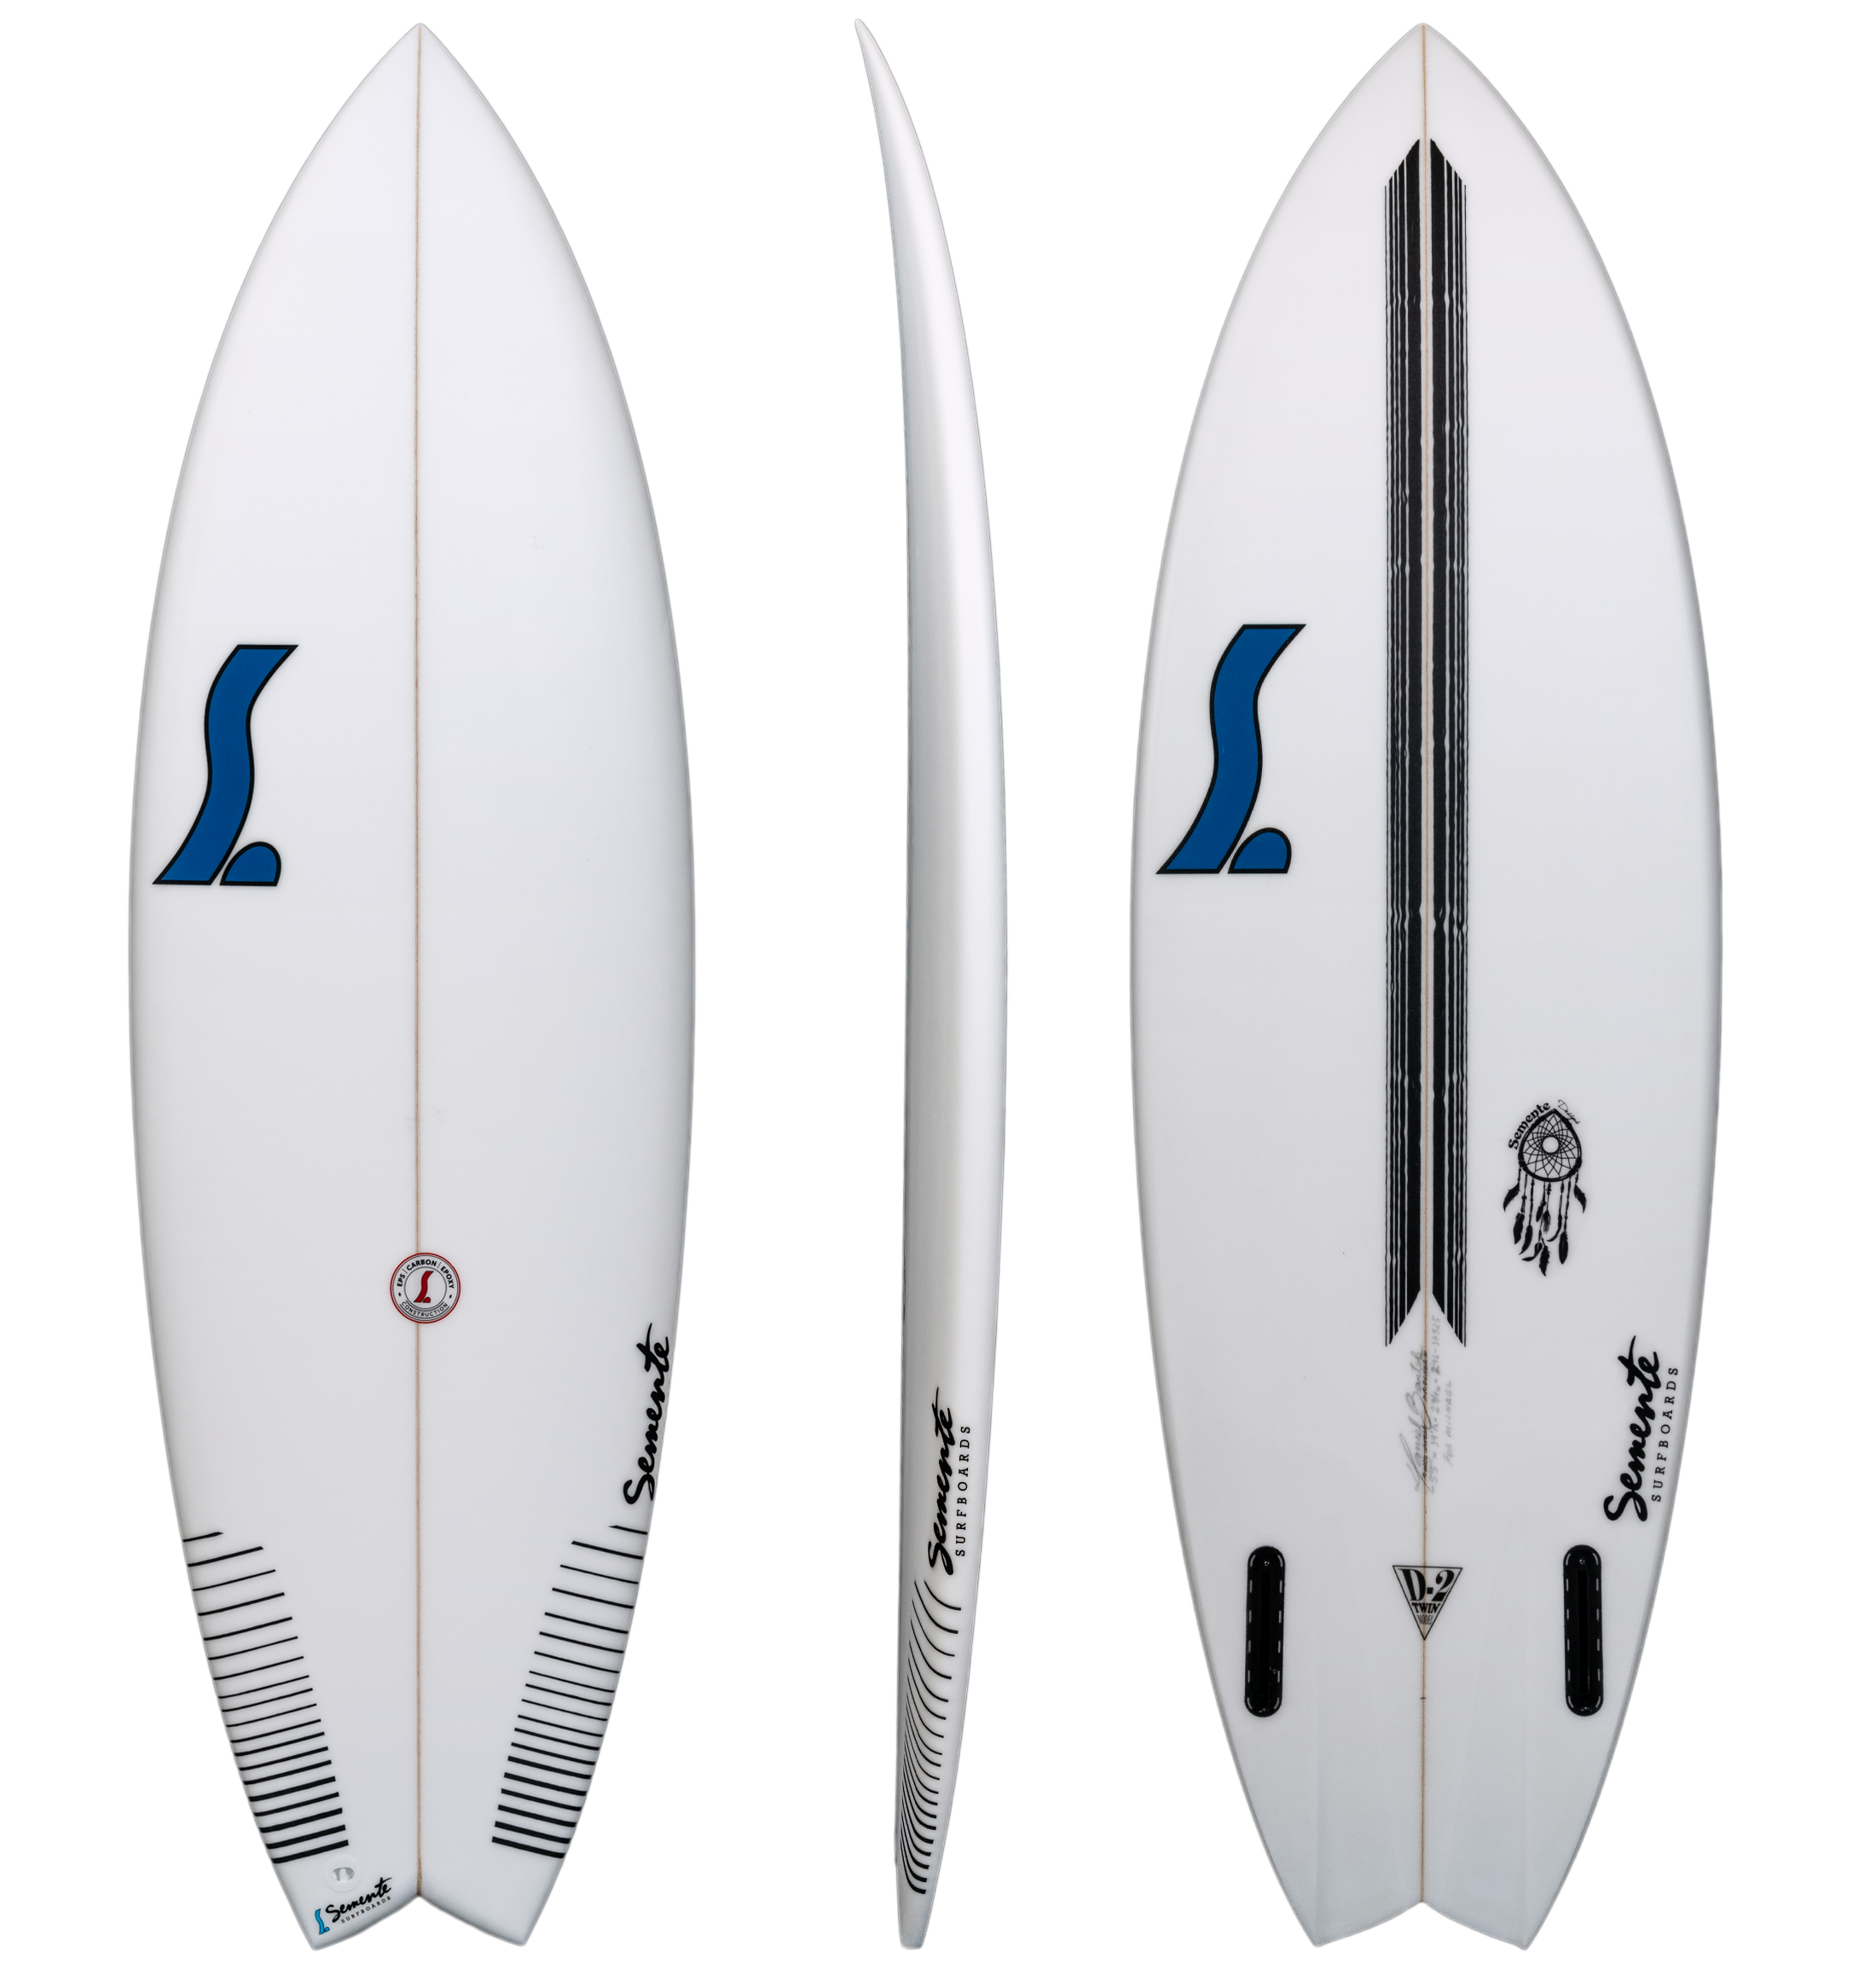 d-2 semente surfboard model